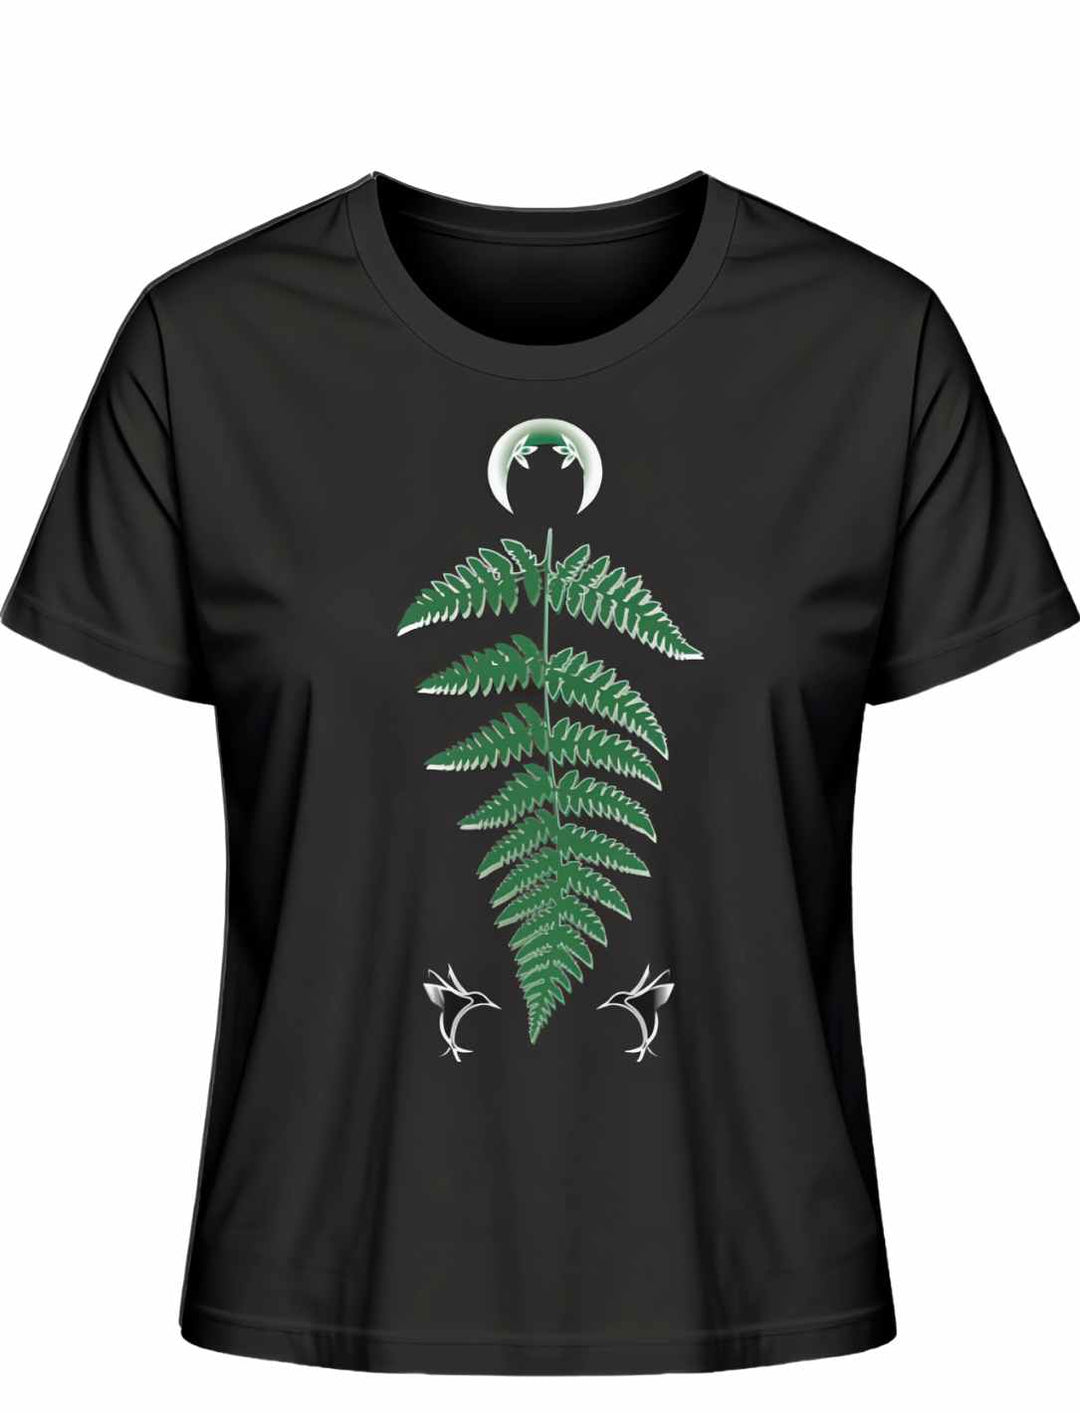 Schwarzes Damen-T-Shirt 'Zauberhafte Naturwelt' mit grünem Farnblatt-Motiv und zwei kleinen weißen Libellen, gekrönt von einem weißen Halbmond.